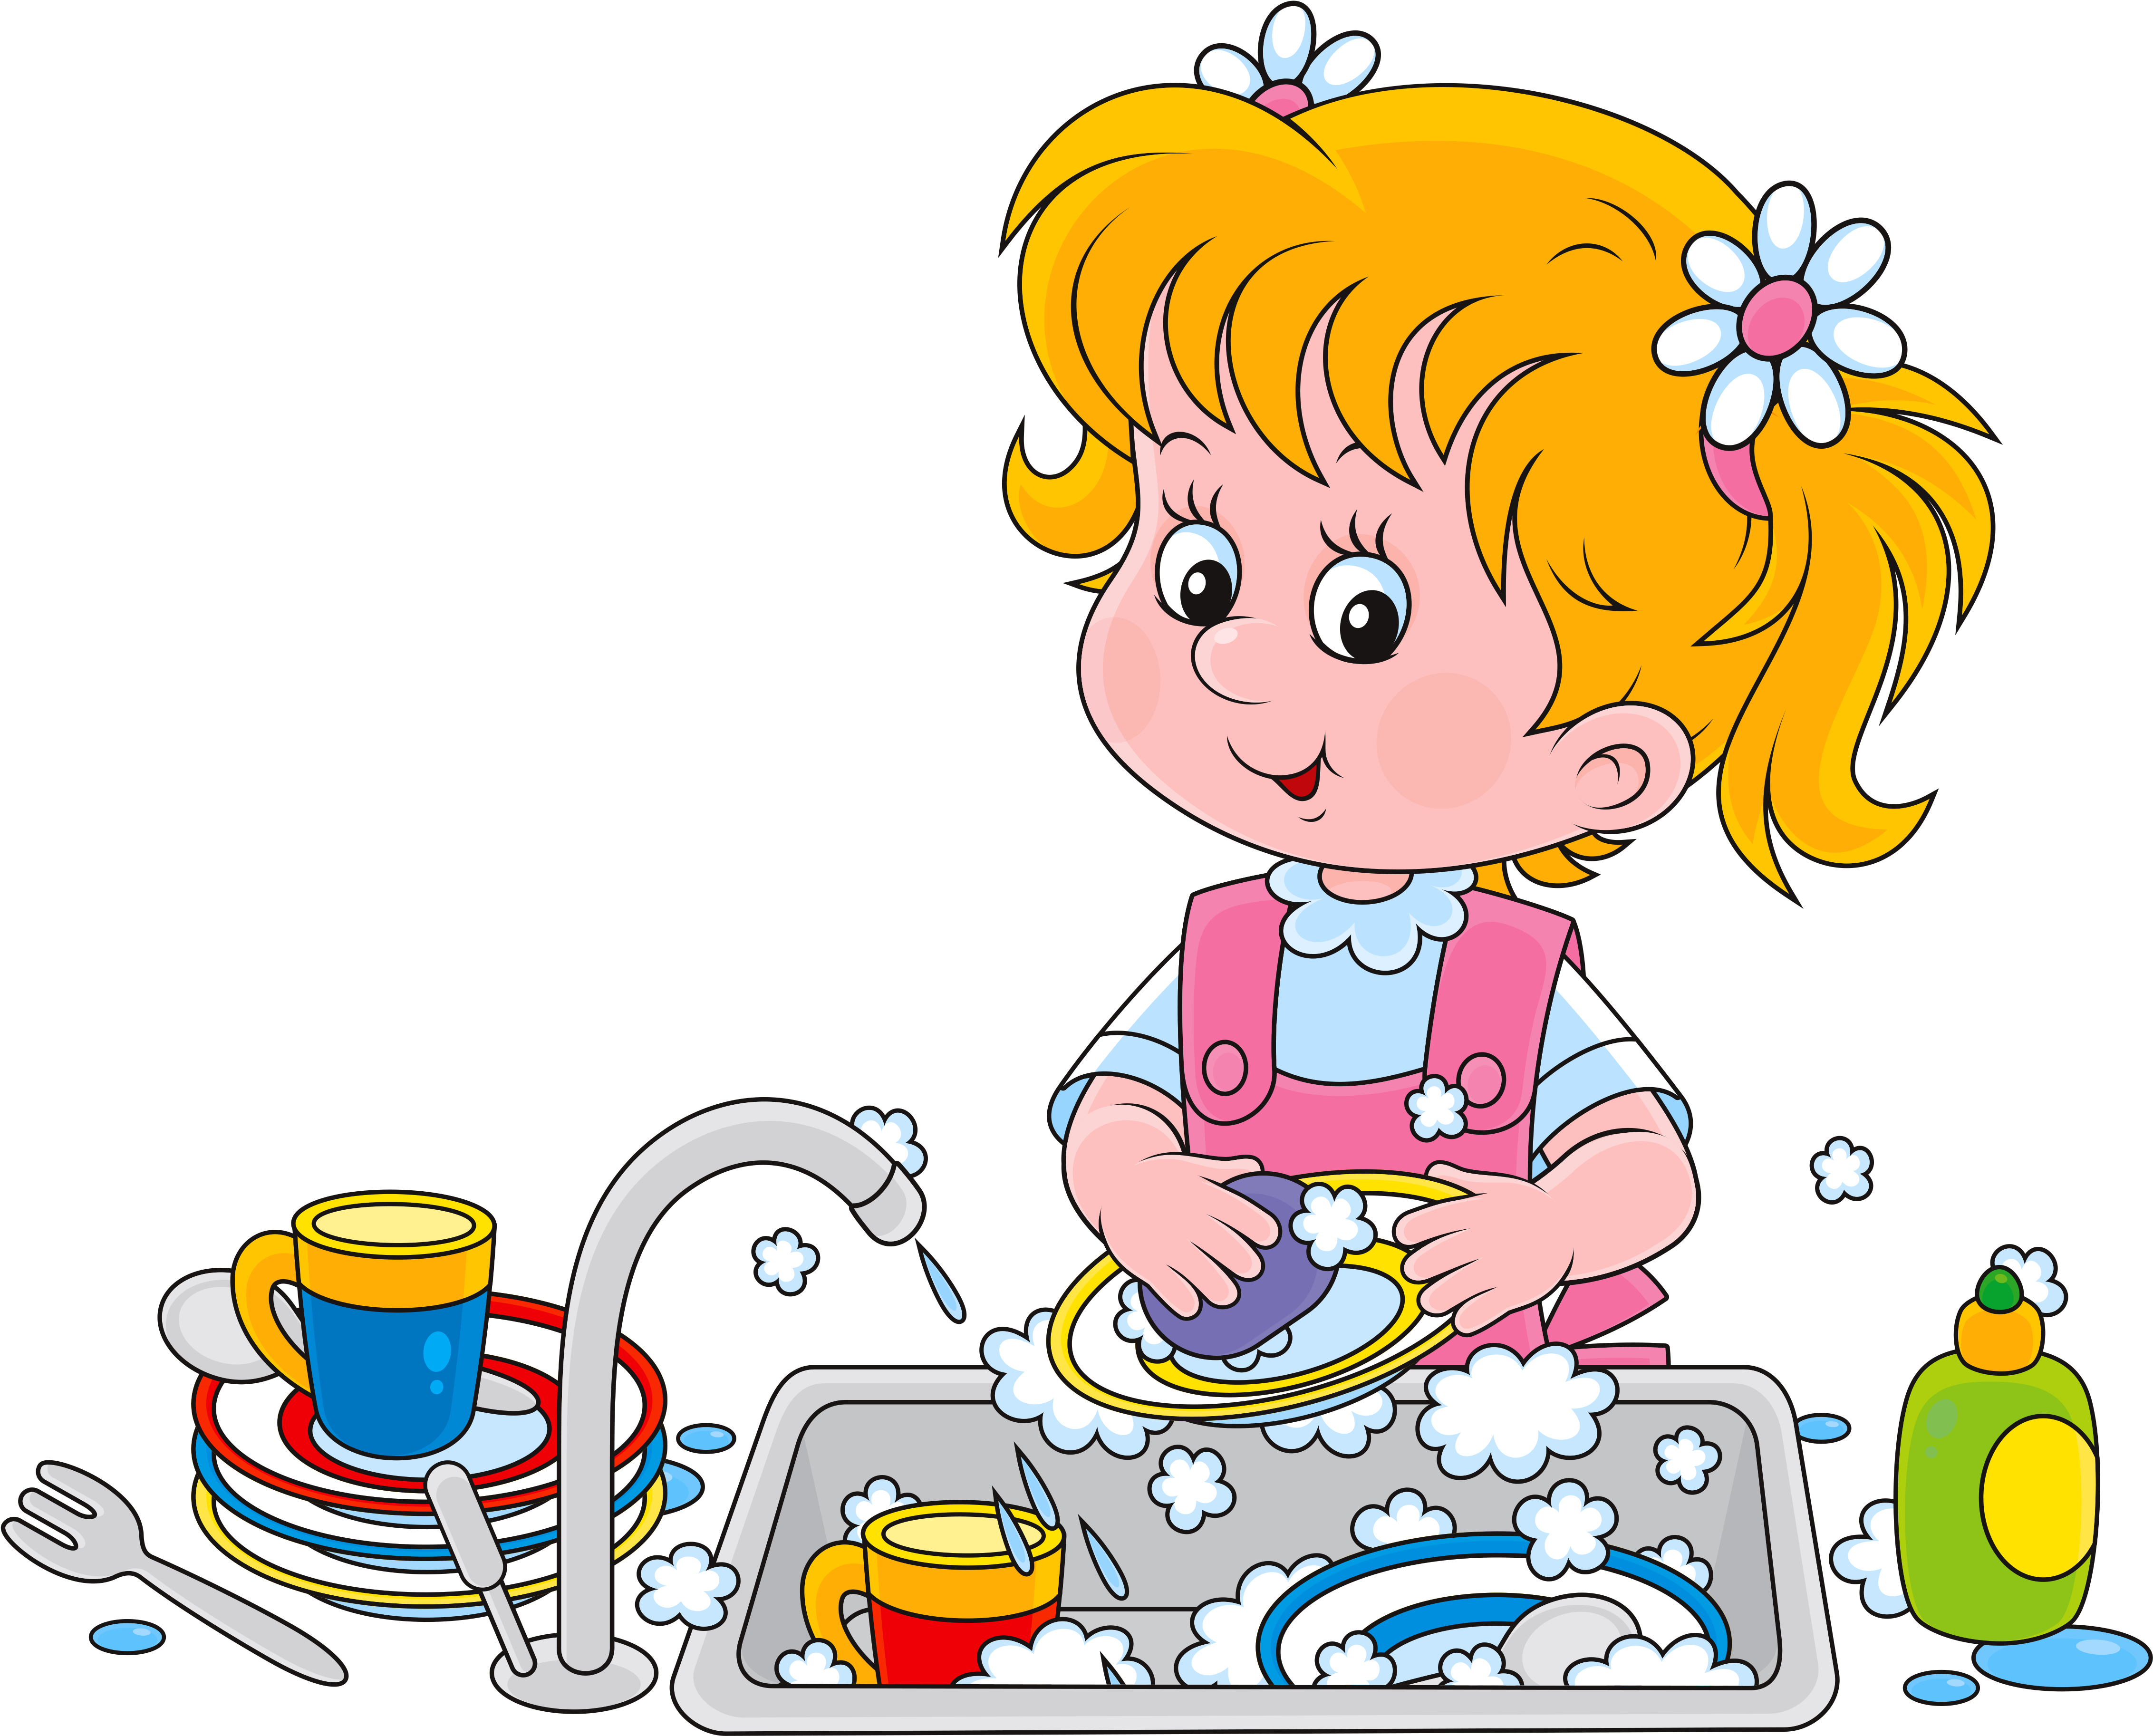 Мальчик моет посуду. Дети мамины помощники. Мытье посуды для детей. Девочка моет посуду. Мытье посуды иллюстрации для детей.